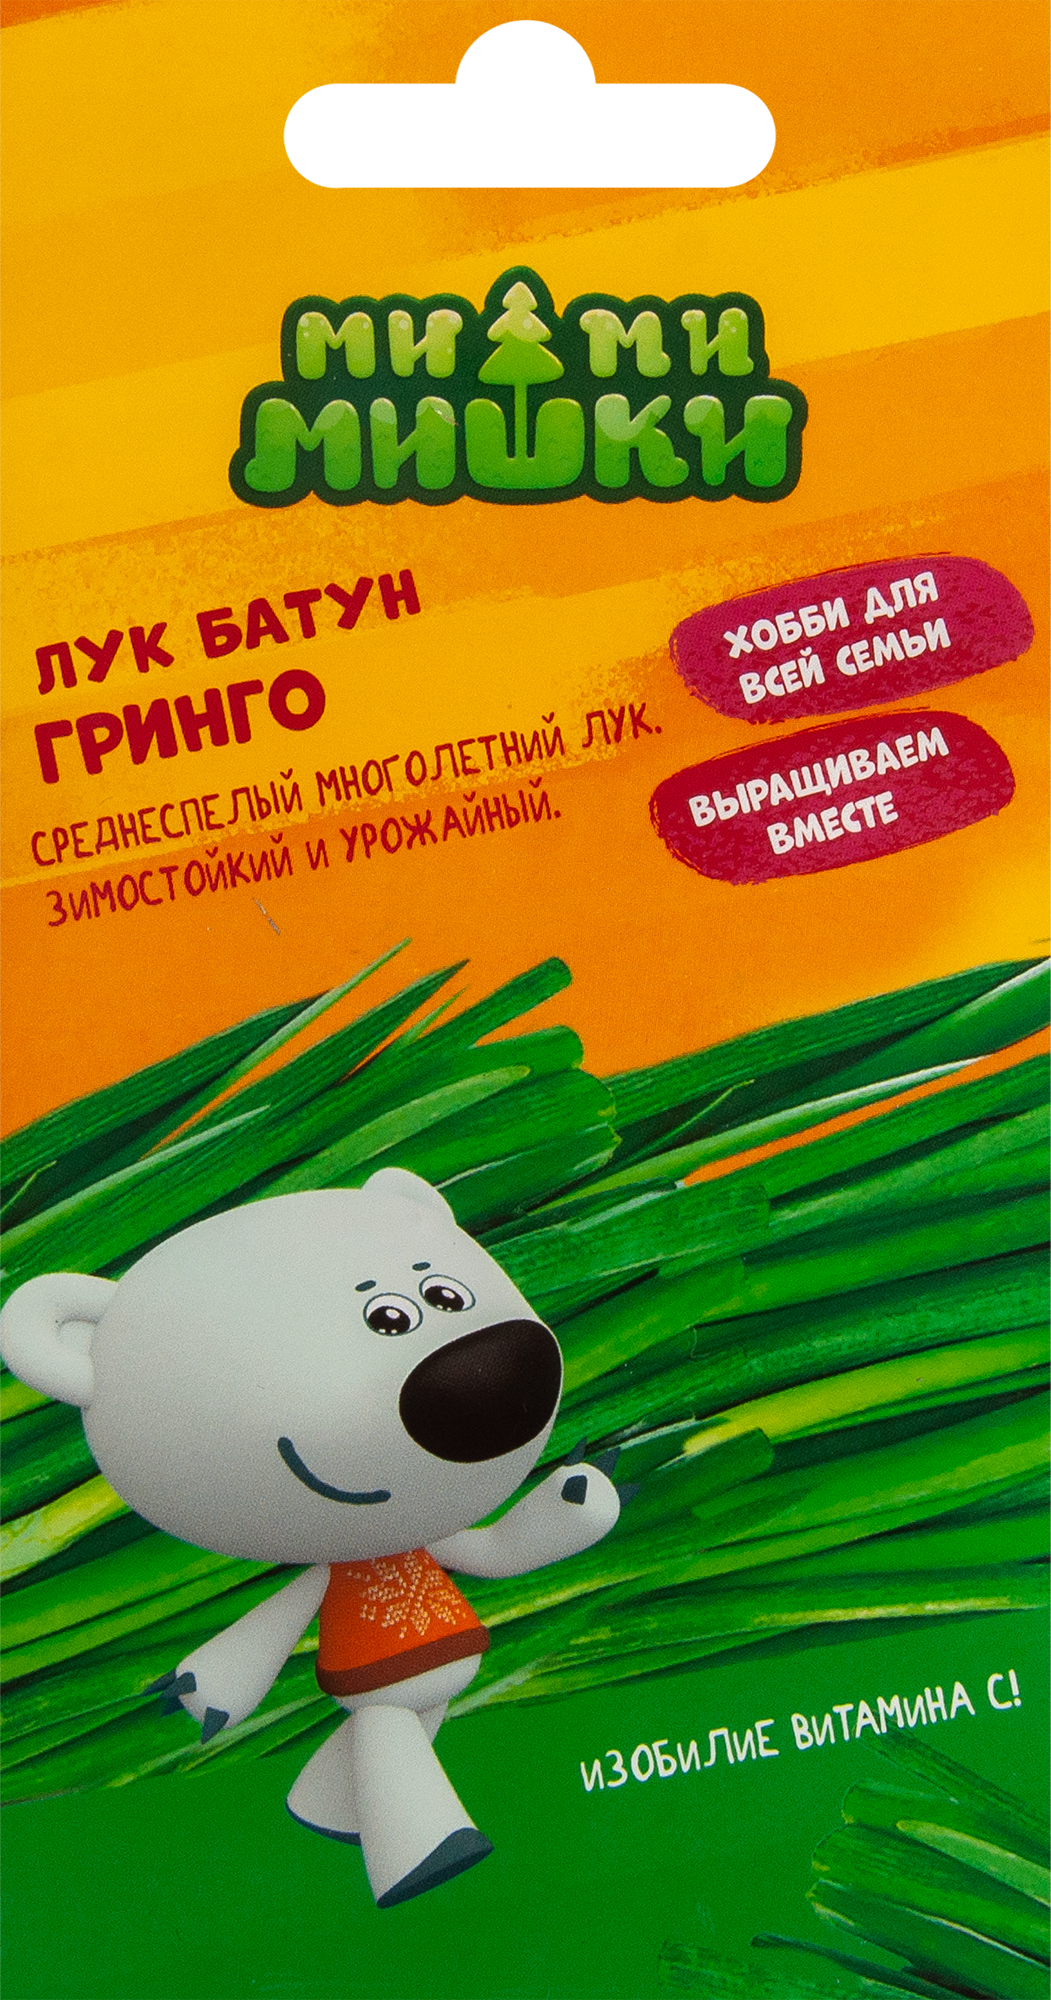 Лук на зелень Ми-ми-мишки Гринго в Волгограде – купить по низкой цене винтернет-магазине Леруа Мерлен